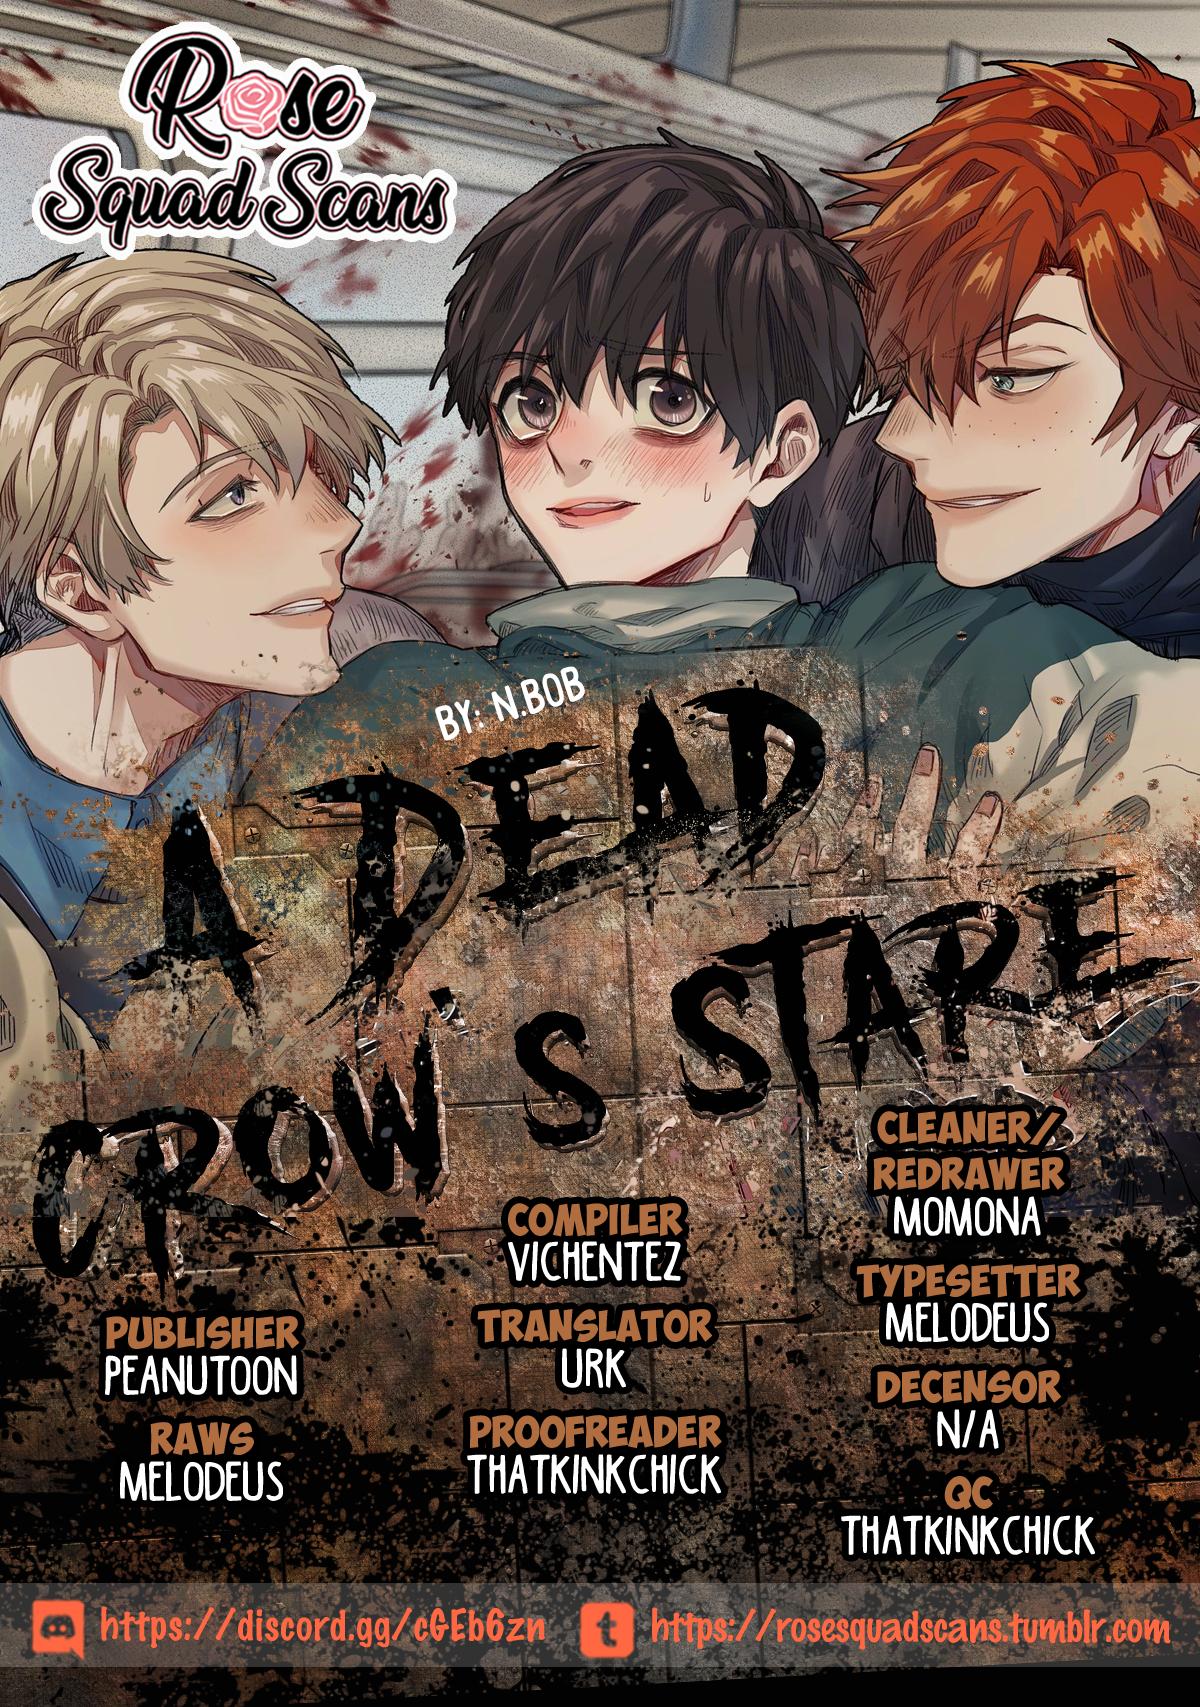 Read Dead Or Alive Manga on Mangakakalot